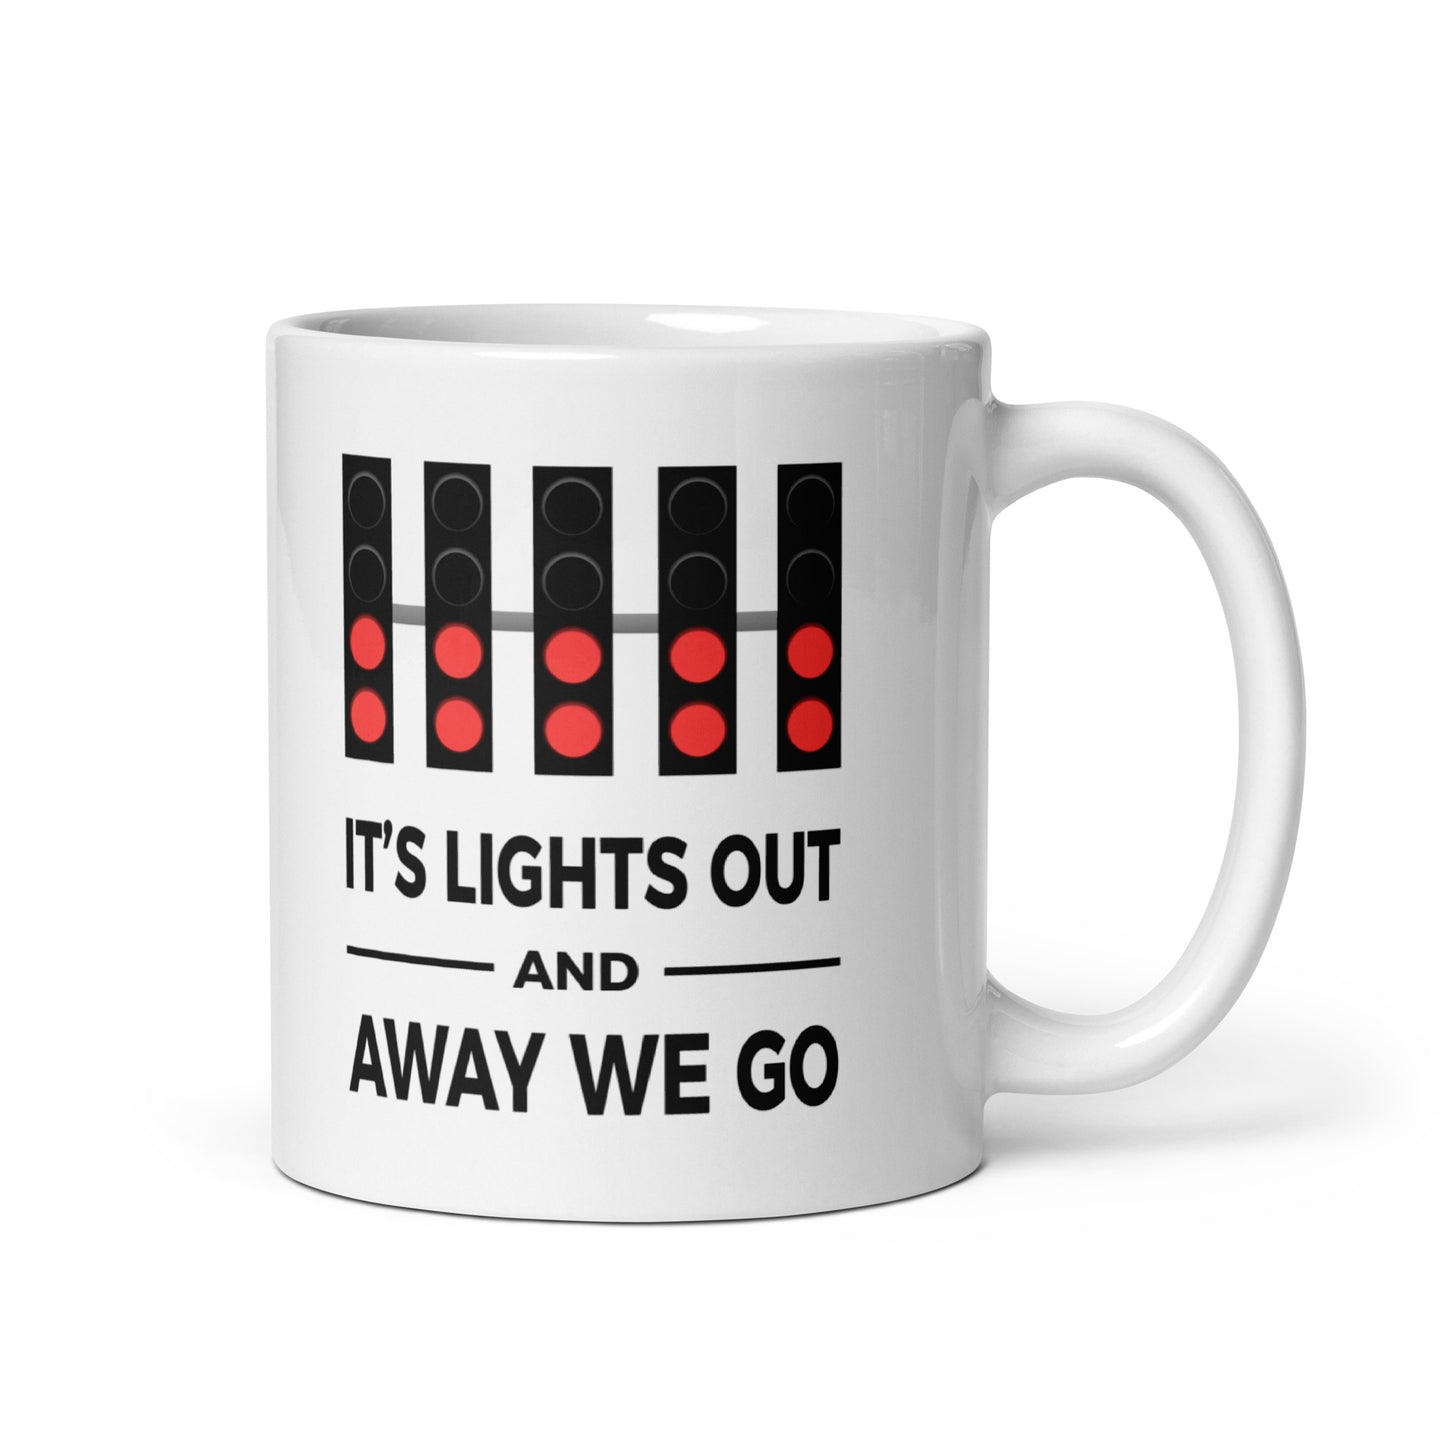 Light's Out And Away We Go Mug